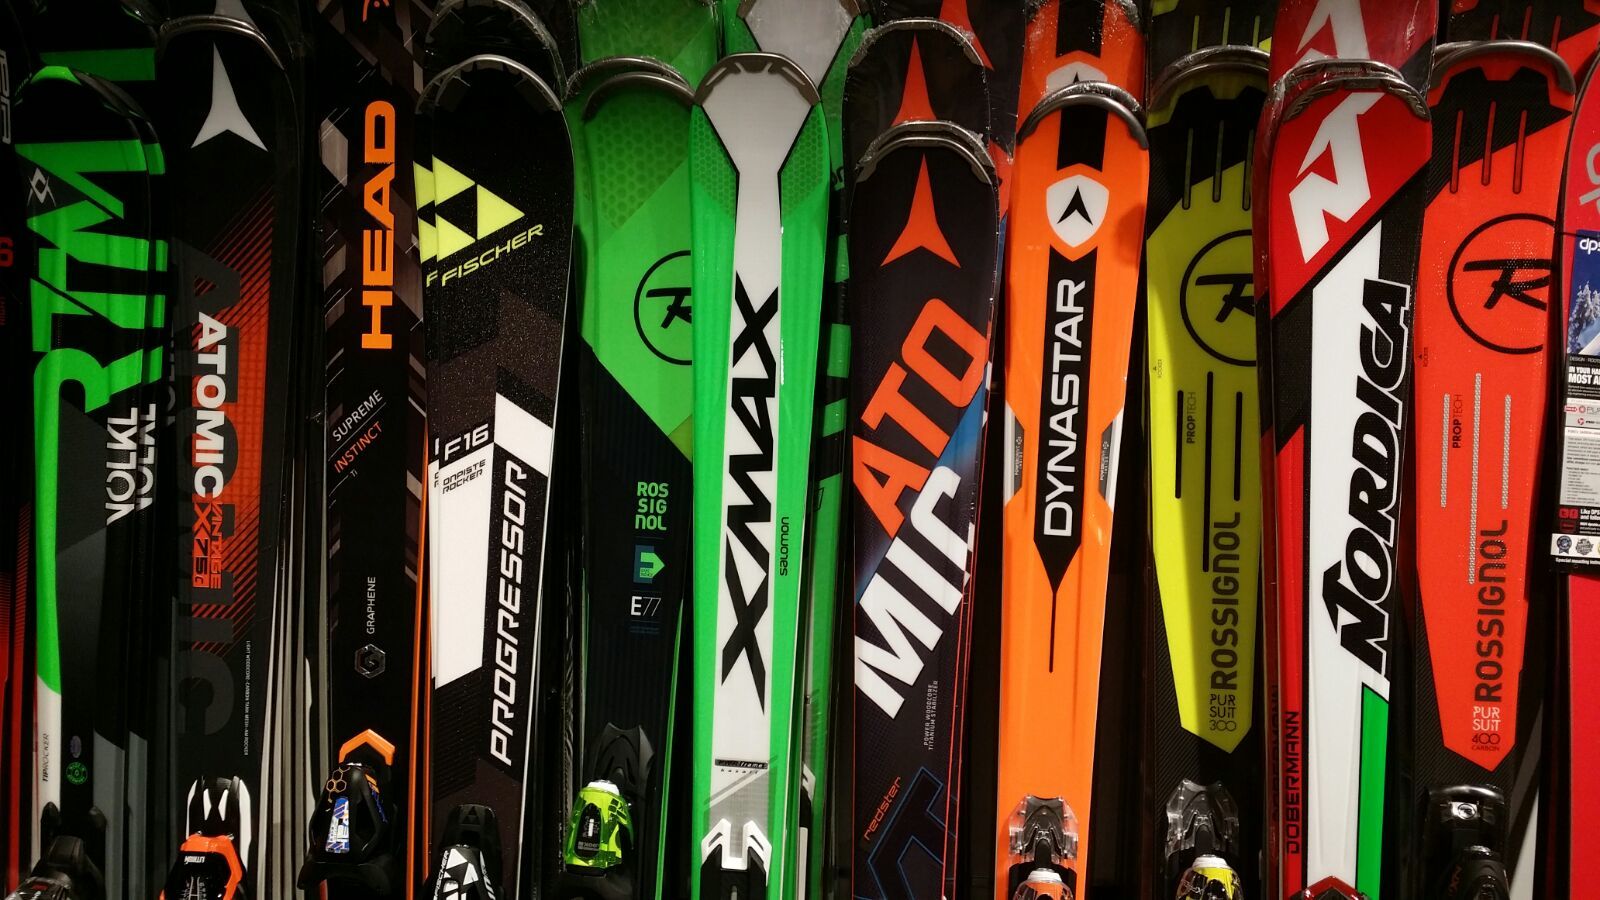 ¿Por qué ese diseño de un patrocinado equipo de F1 en los esquís?